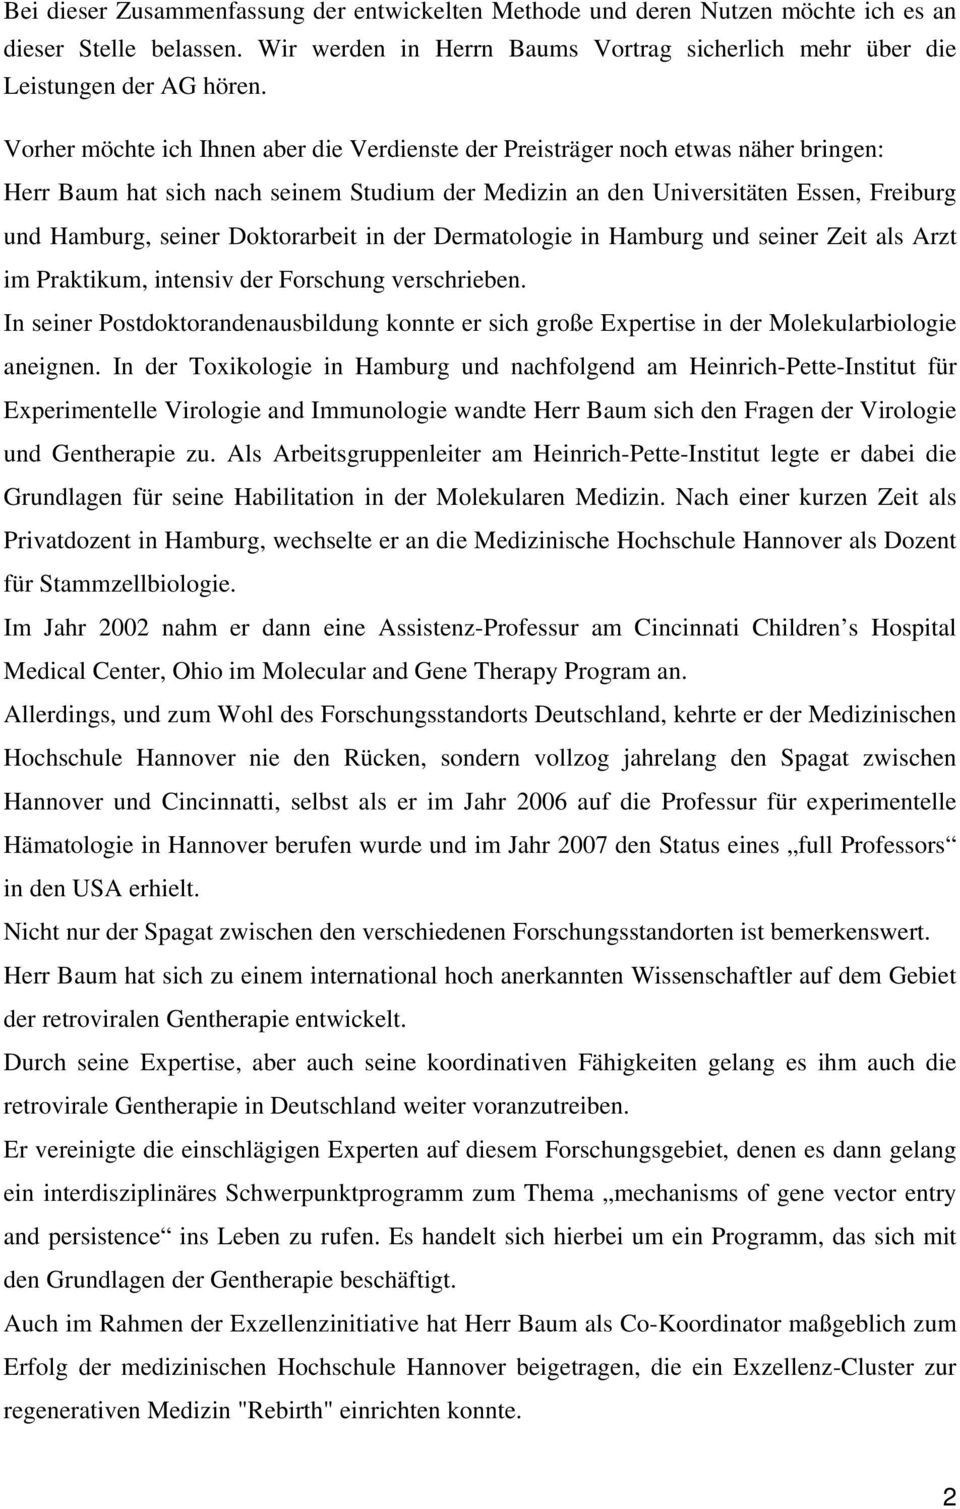 Doktorarbeit in der Dermatologie in Hamburg und seiner Zeit als Arzt im Praktikum, intensiv der Forschung verschrieben.